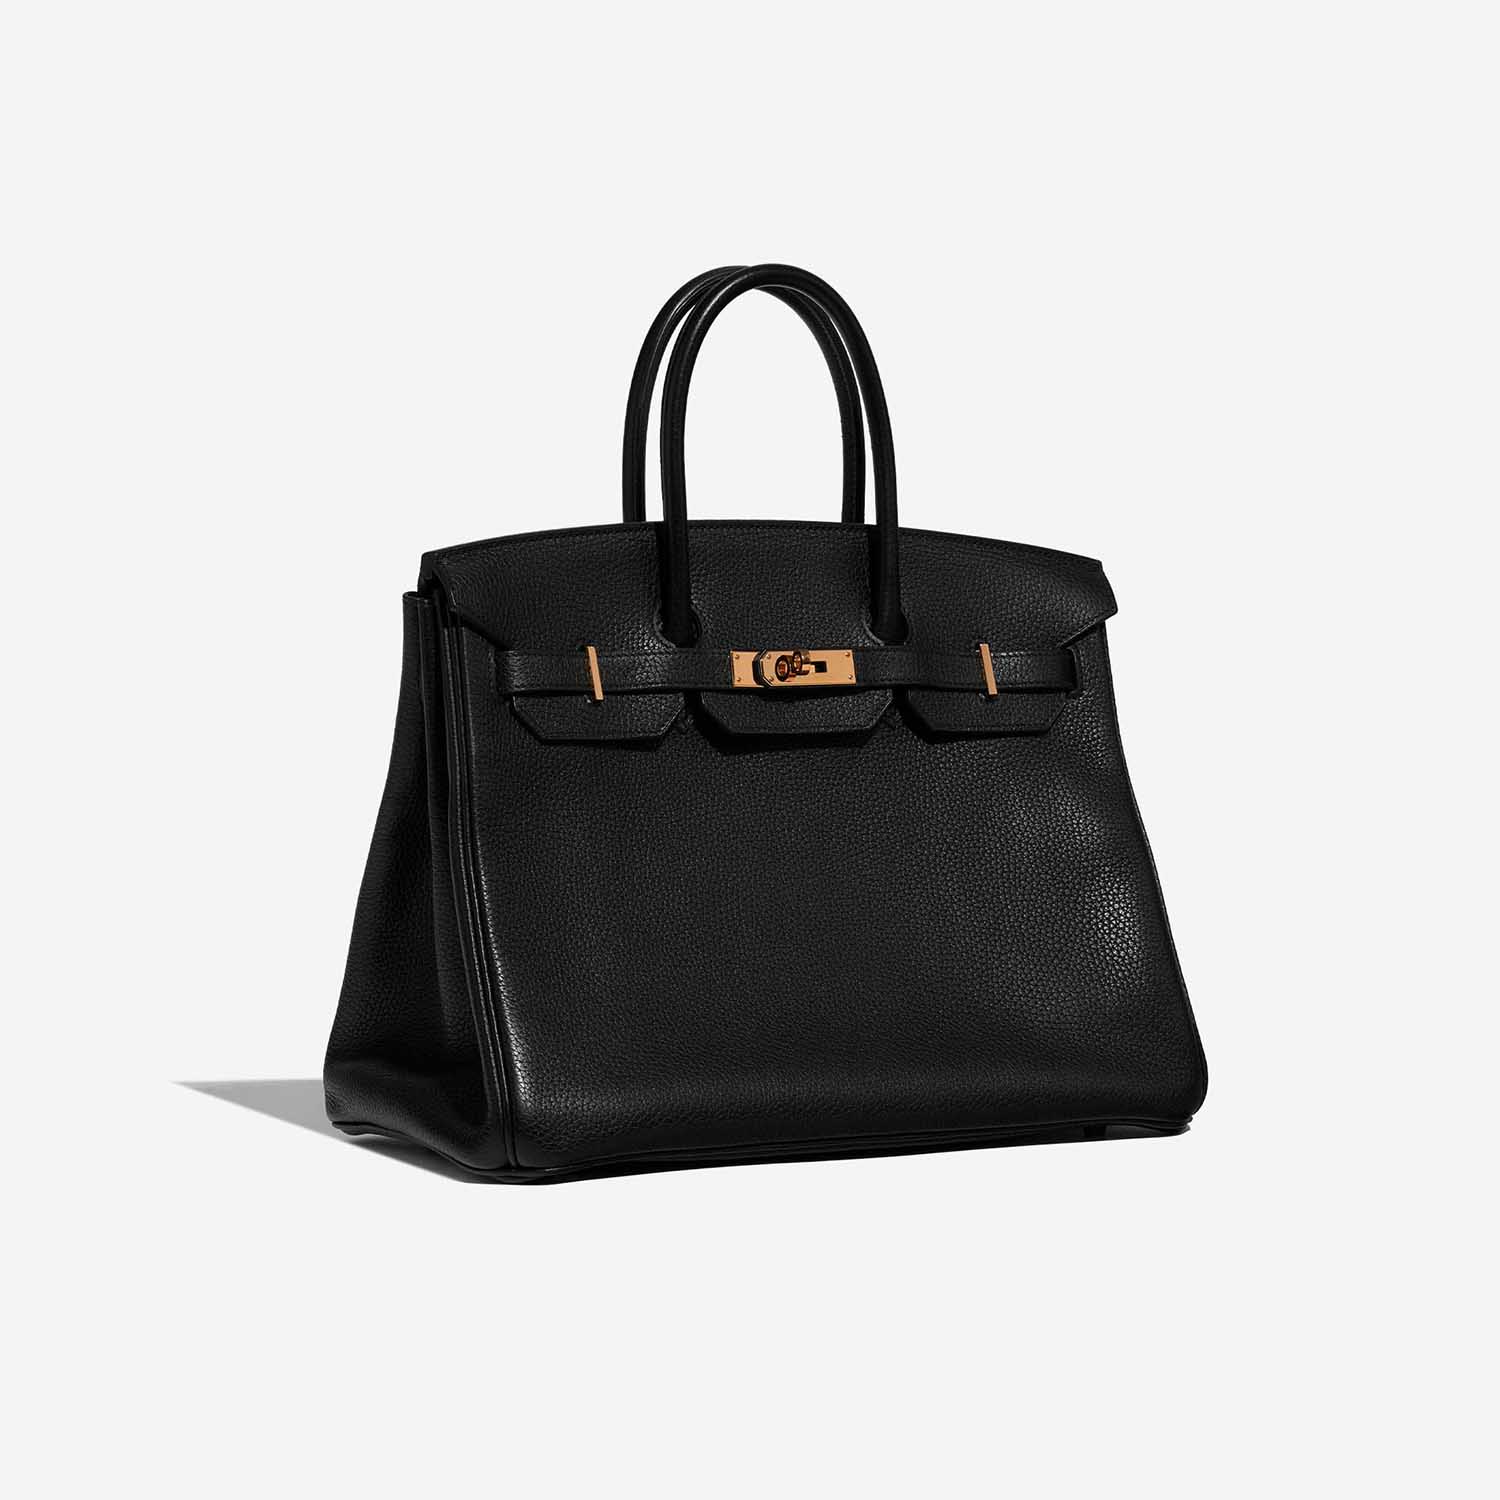 Sac Hermès d'occasion Birkin 35 Clémence Noir Noir Côté Face | Vendez votre sac de créateur sur Saclab.com